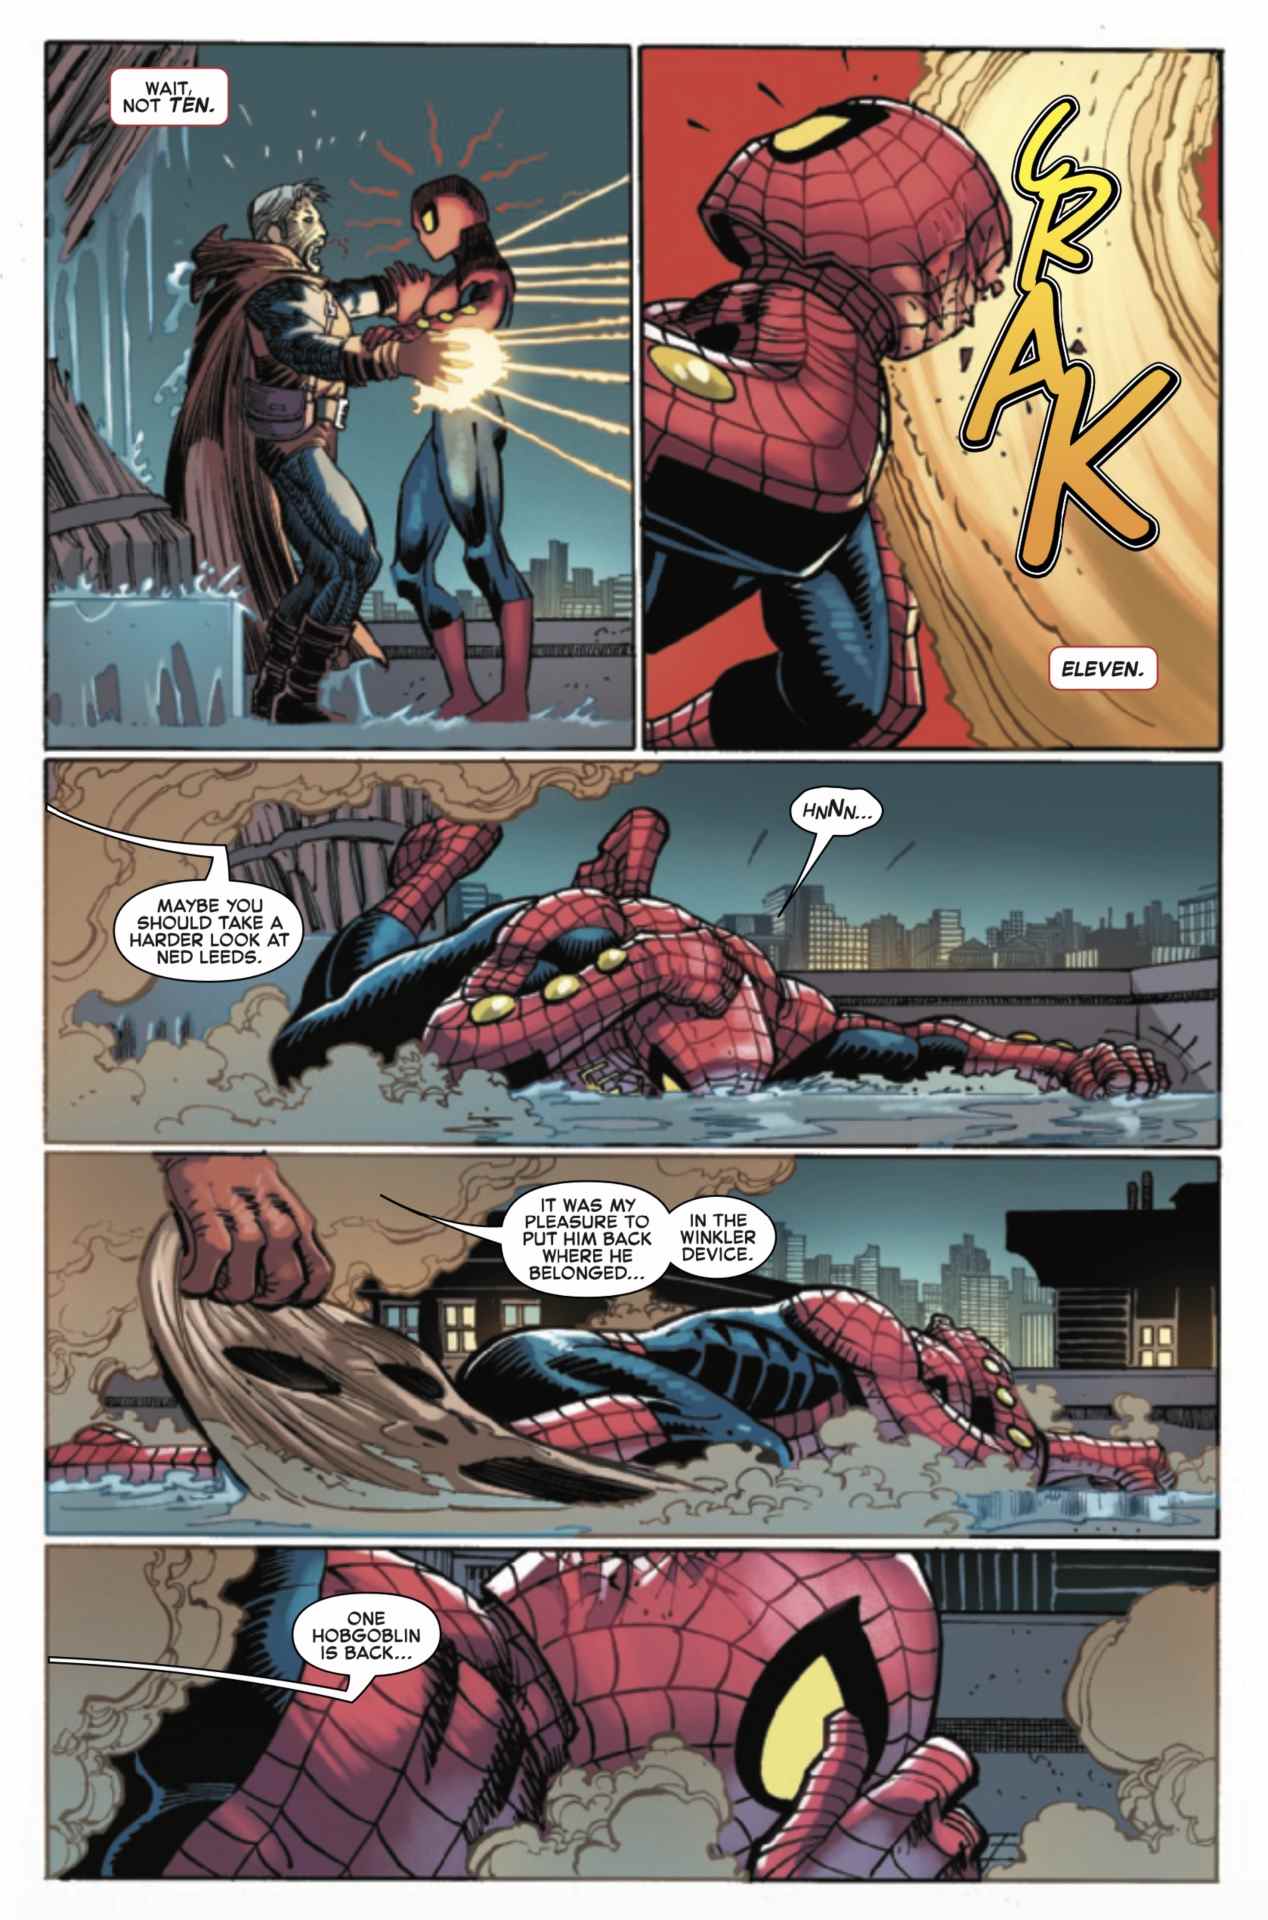 Incroyable page de Spider-Man #12